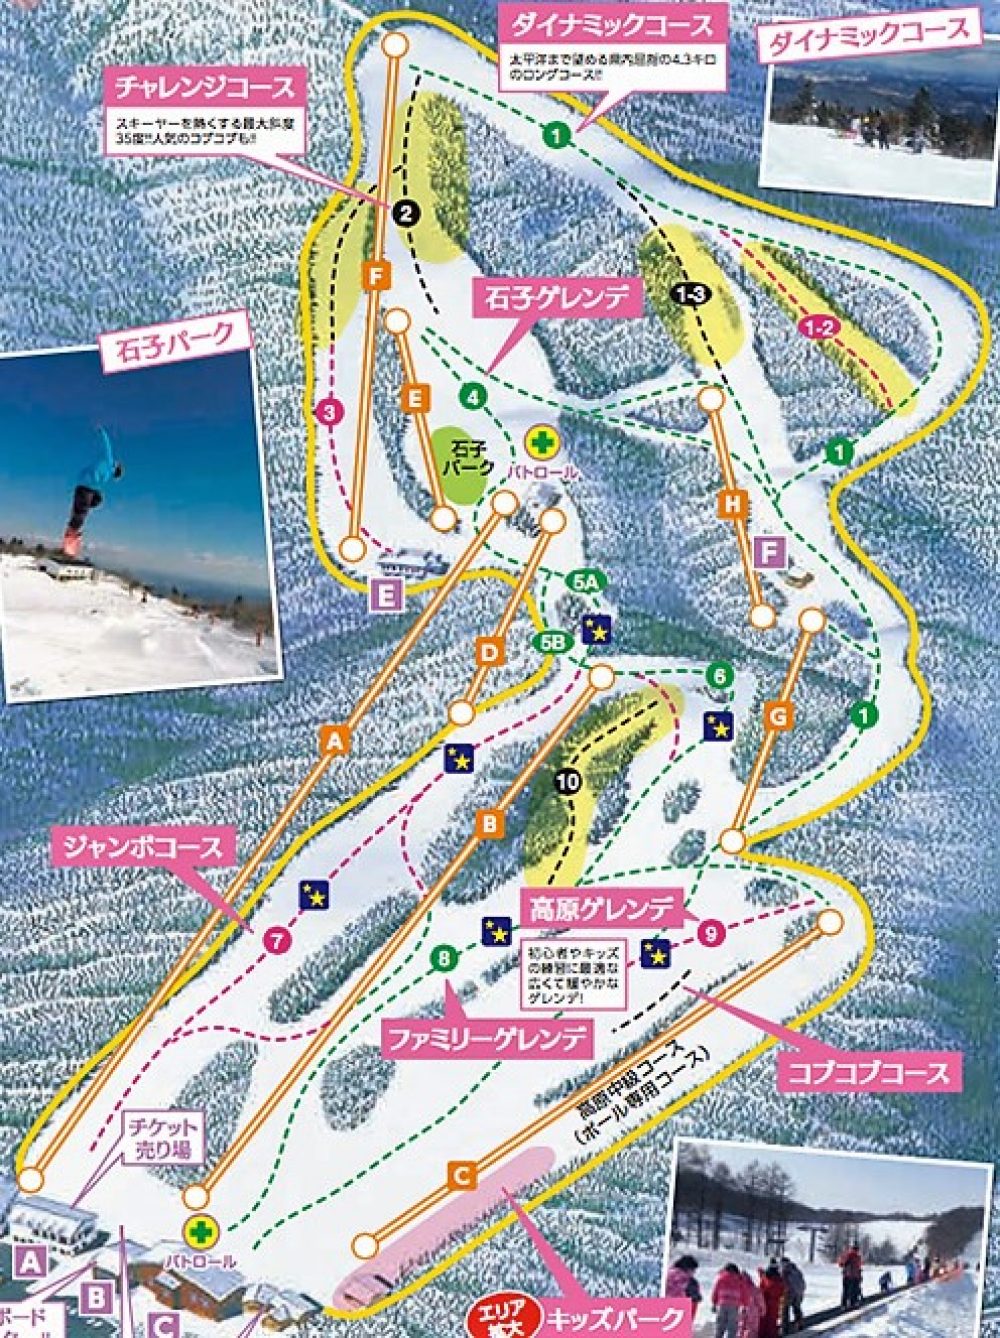 みやぎ蔵王えぼしスキー場 全国スキー場 スノーリゾートガイド Japanese Snowresort Portal Site